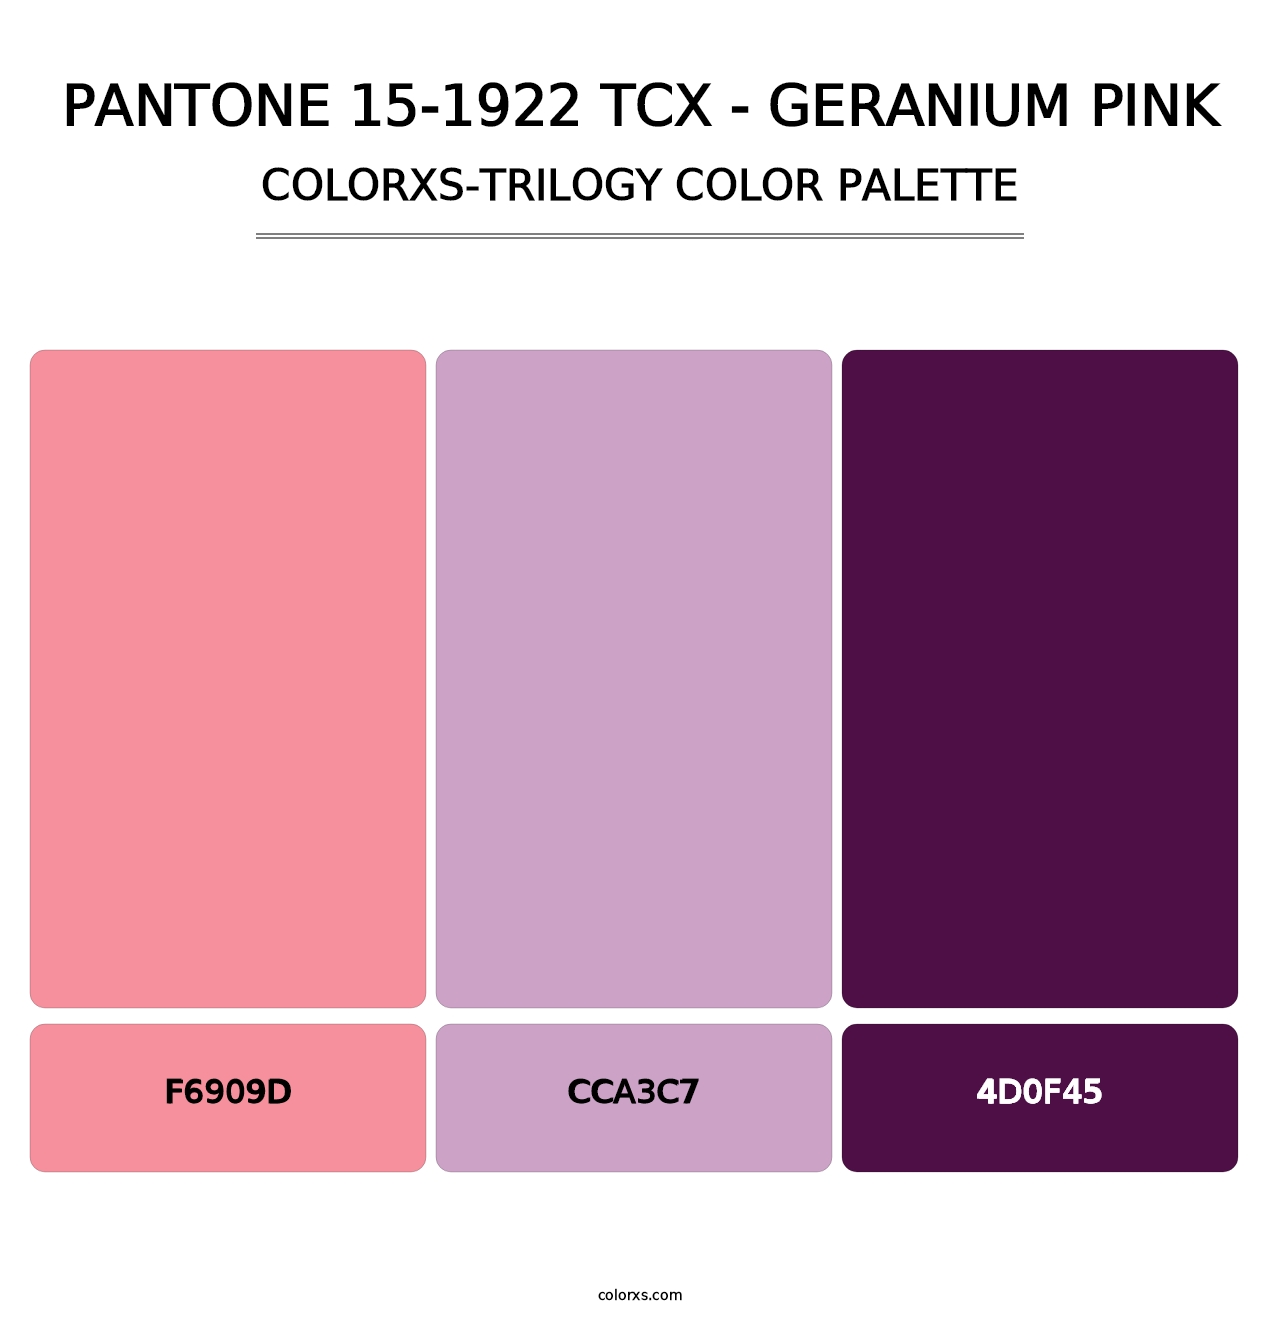 PANTONE 15-1922 TCX - Geranium Pink - Colorxs Trilogy Palette